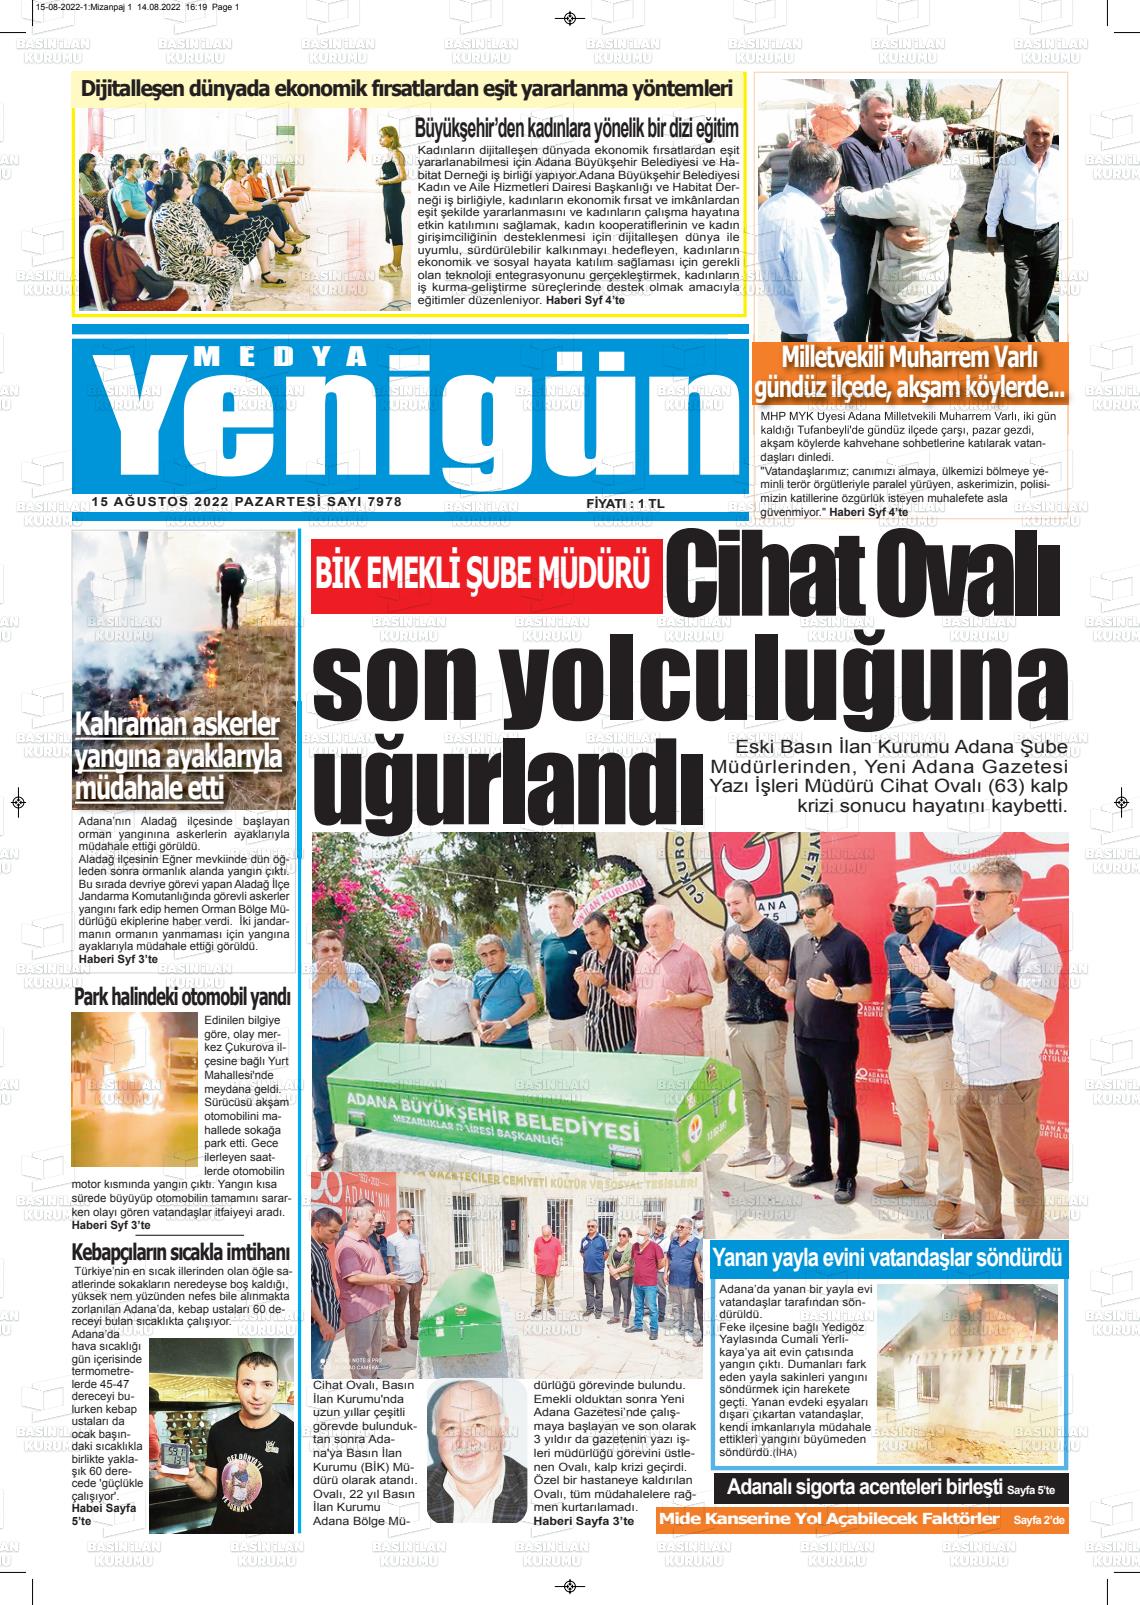 15 Ağustos 2022 Medya Yenigün Gazete Manşeti